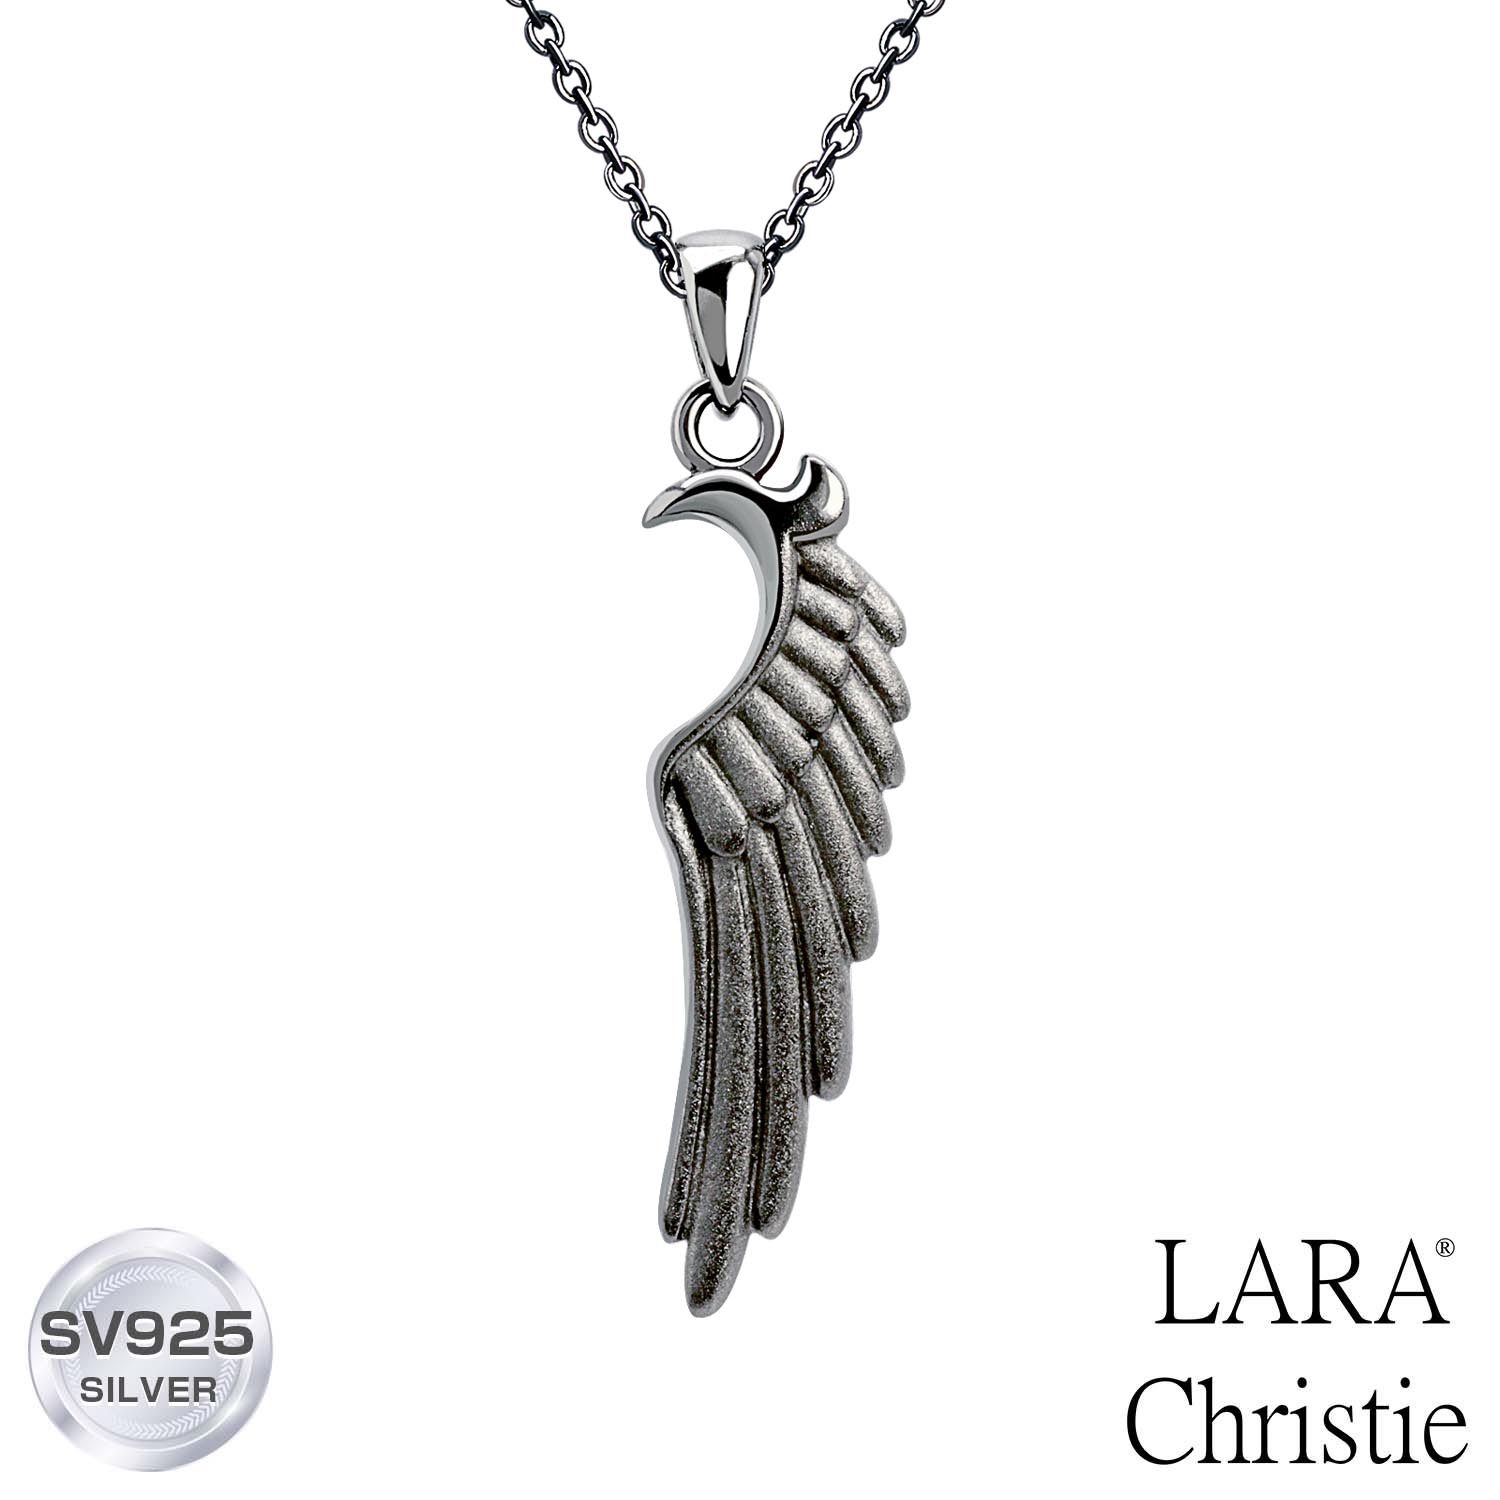 ララクリスティー ネックレス メンズ LARA Christie (ララクリスティー)ヴィクトリア ネックレス[ BLACK Label ] シルバー925 silver 男性 誕生日プレゼント